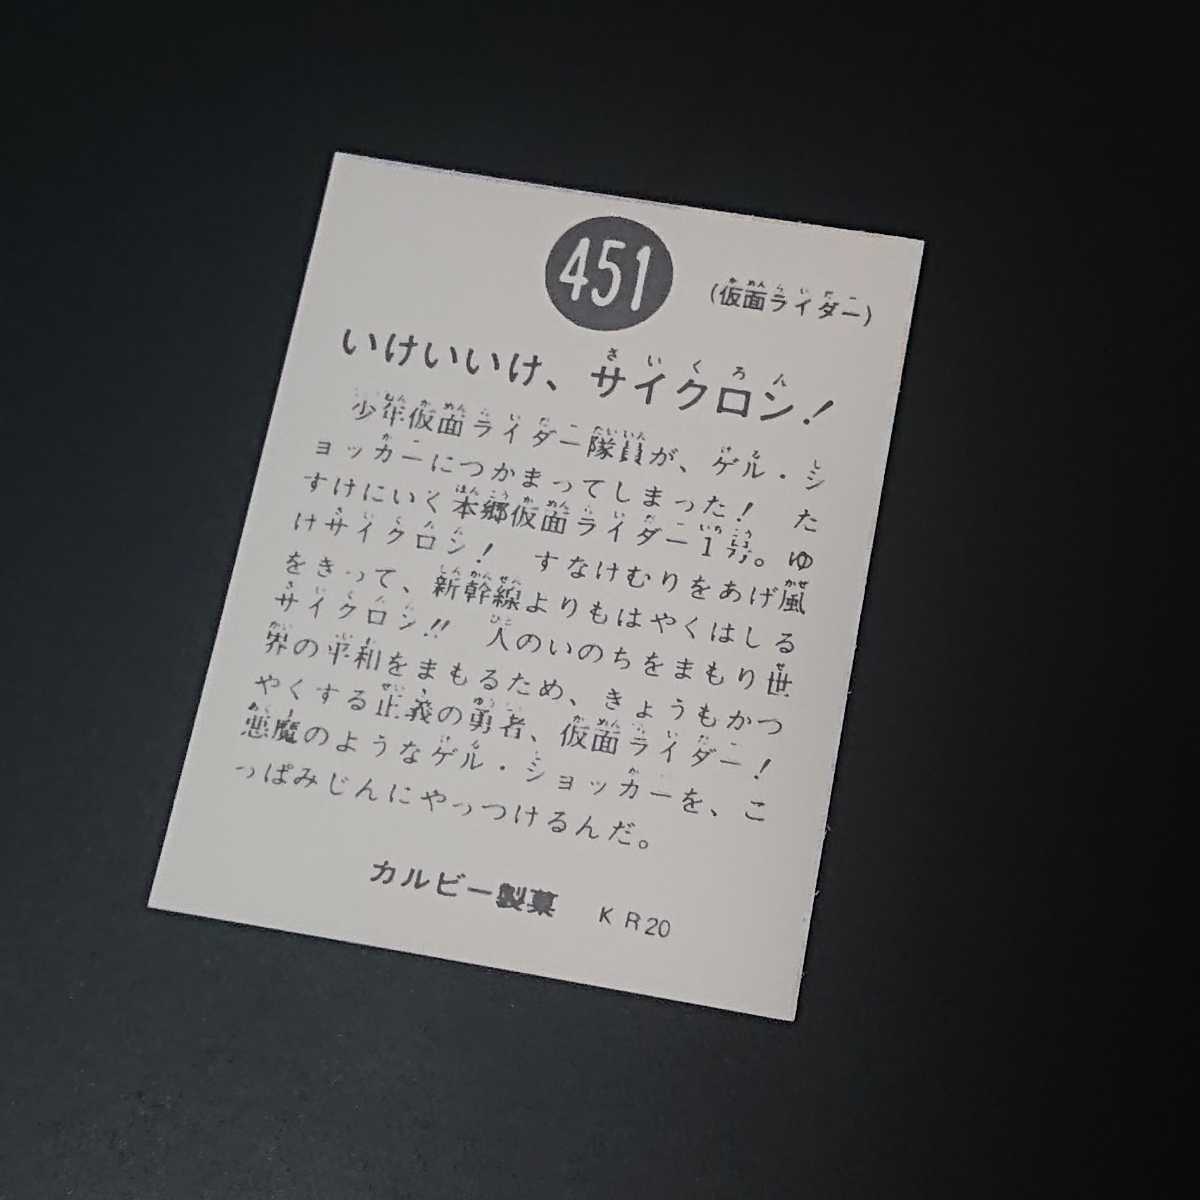 仮面ライダー カード 451番 KR20 カルビー ライダーカード 旧_画像2